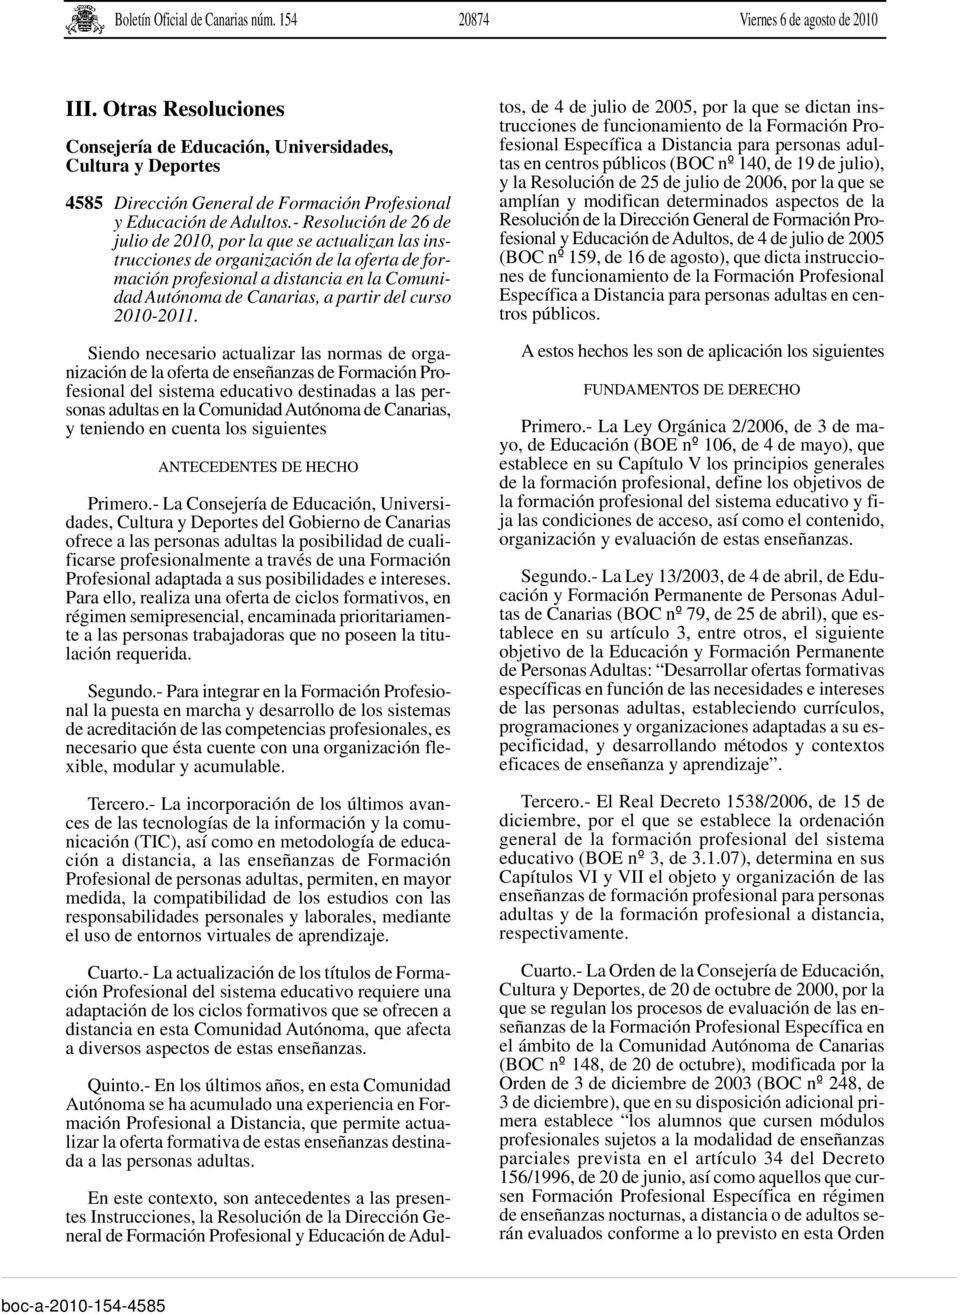 - Resolución de 26 de julio de 2010, por la que se actualizan las instrucciones de organización de la oferta de formación profesional a distancia en la Comunidad Autónoma de Canarias, a partir del